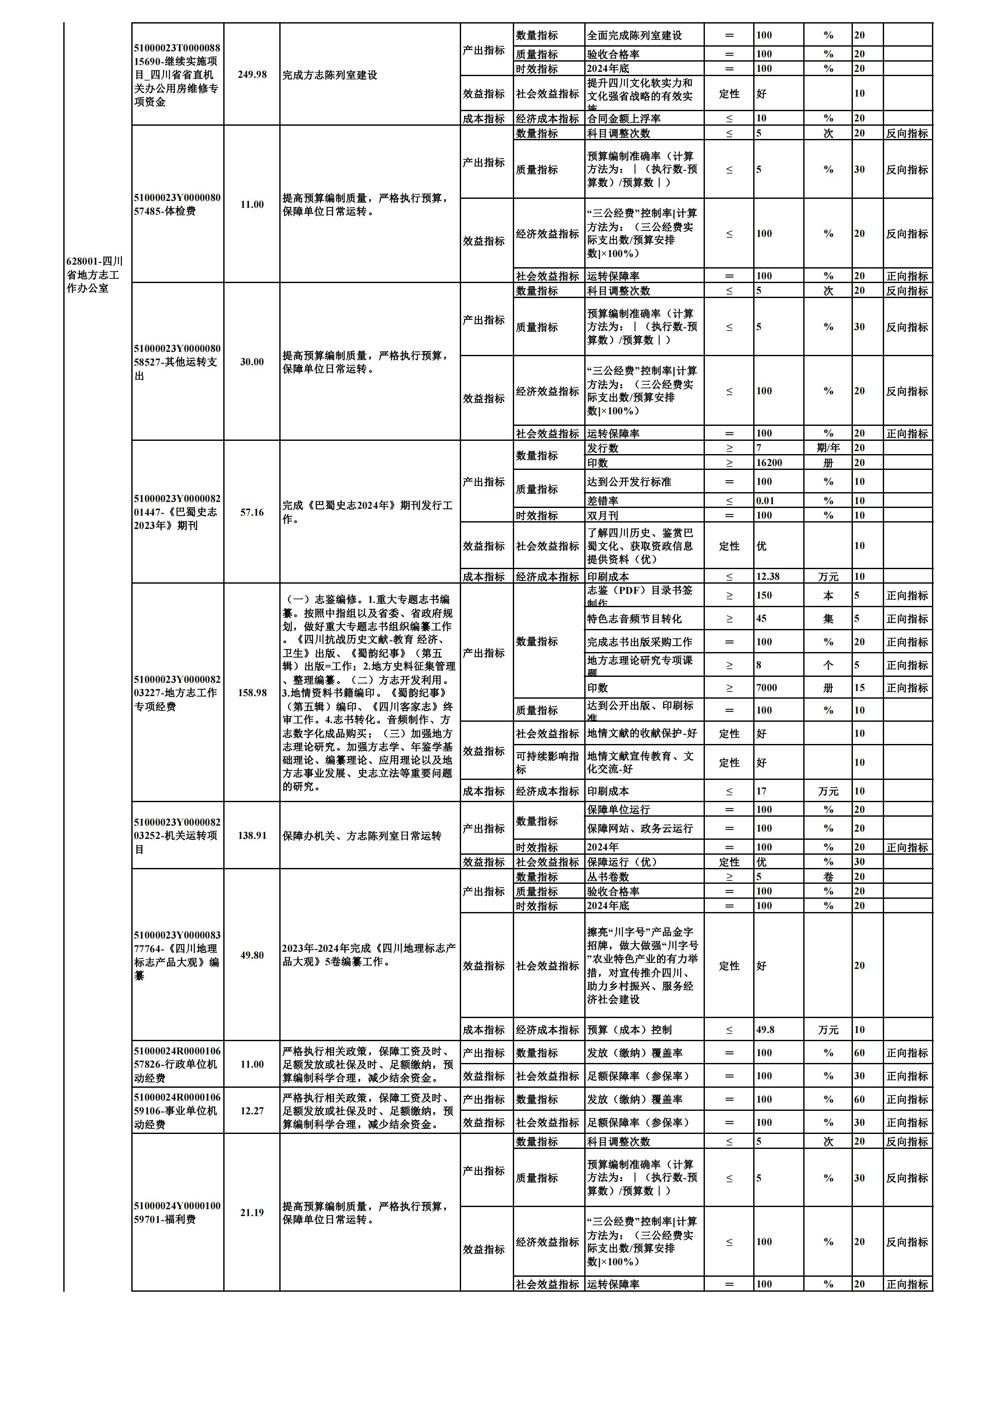 0226-部门项目支出绩效目标表_01